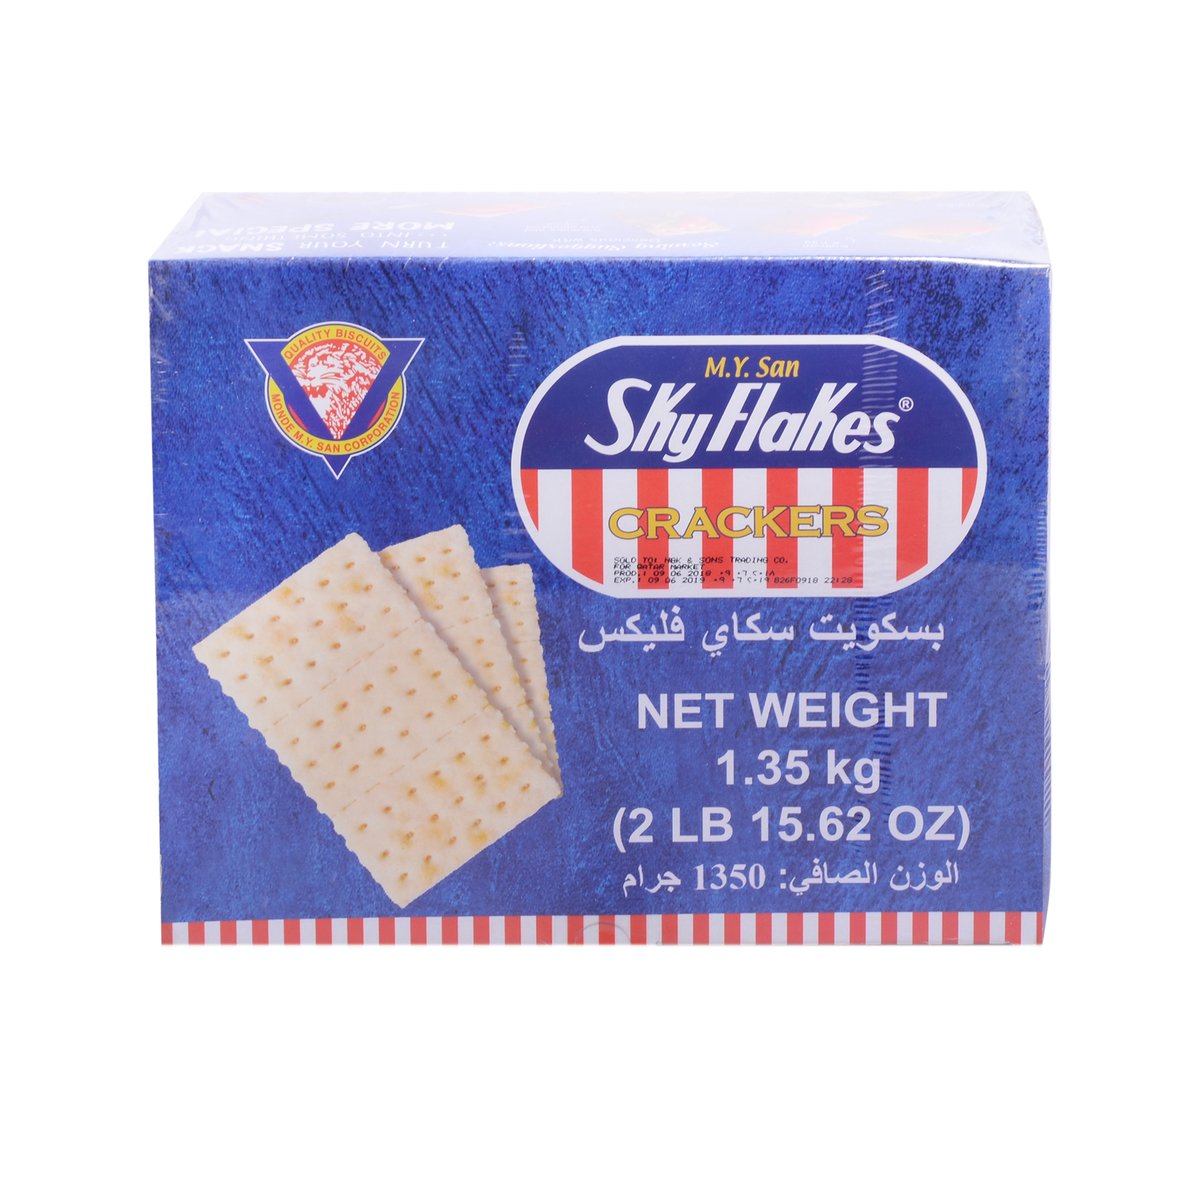 M.Y San Sky Flakes Crackers 1.35kg